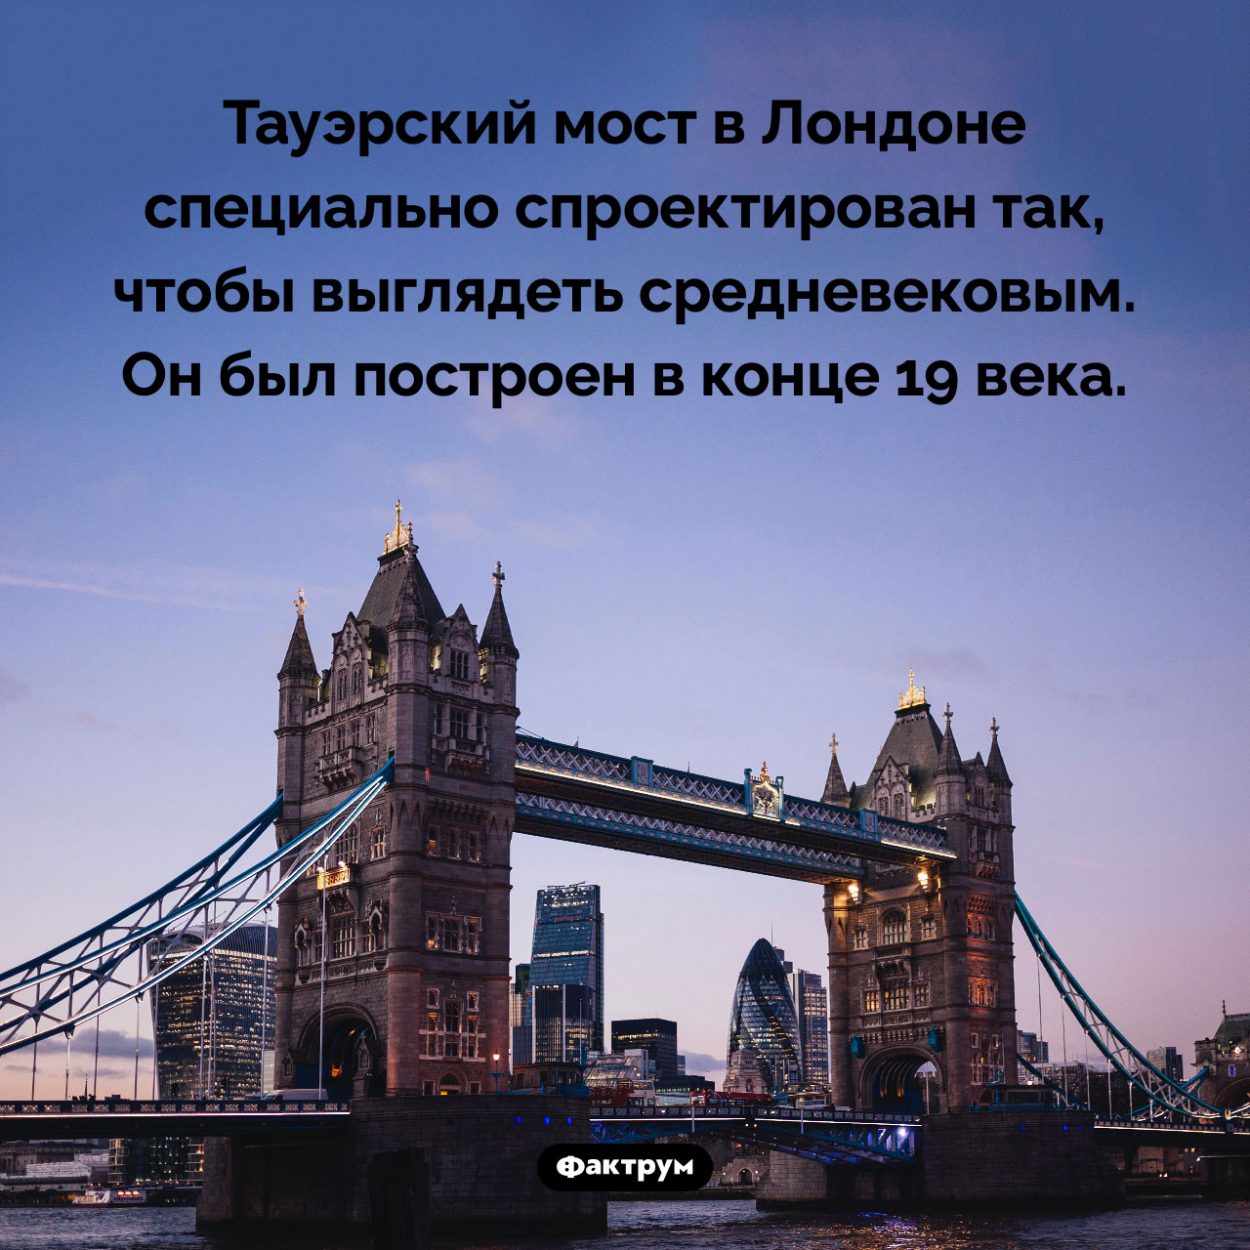 Тауэрский мост относительно современный. Тауэрский мост в Лондоне специально спроектирован так, чтобы выглядеть средневековым. Он был построен в конце 19 века.